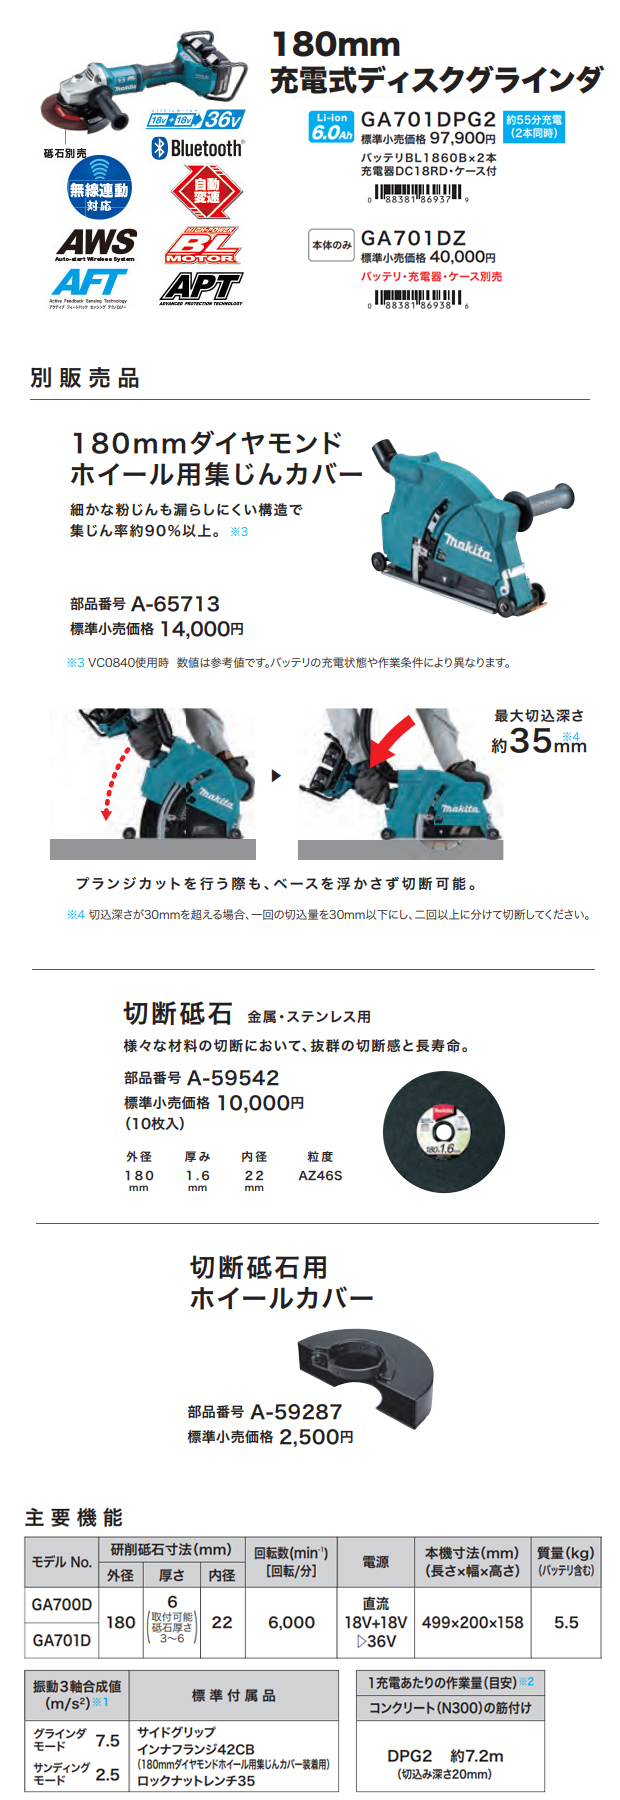 マキタ 180mm 充電式ディスクグラインダ GA701D 電動工具・エアー工具